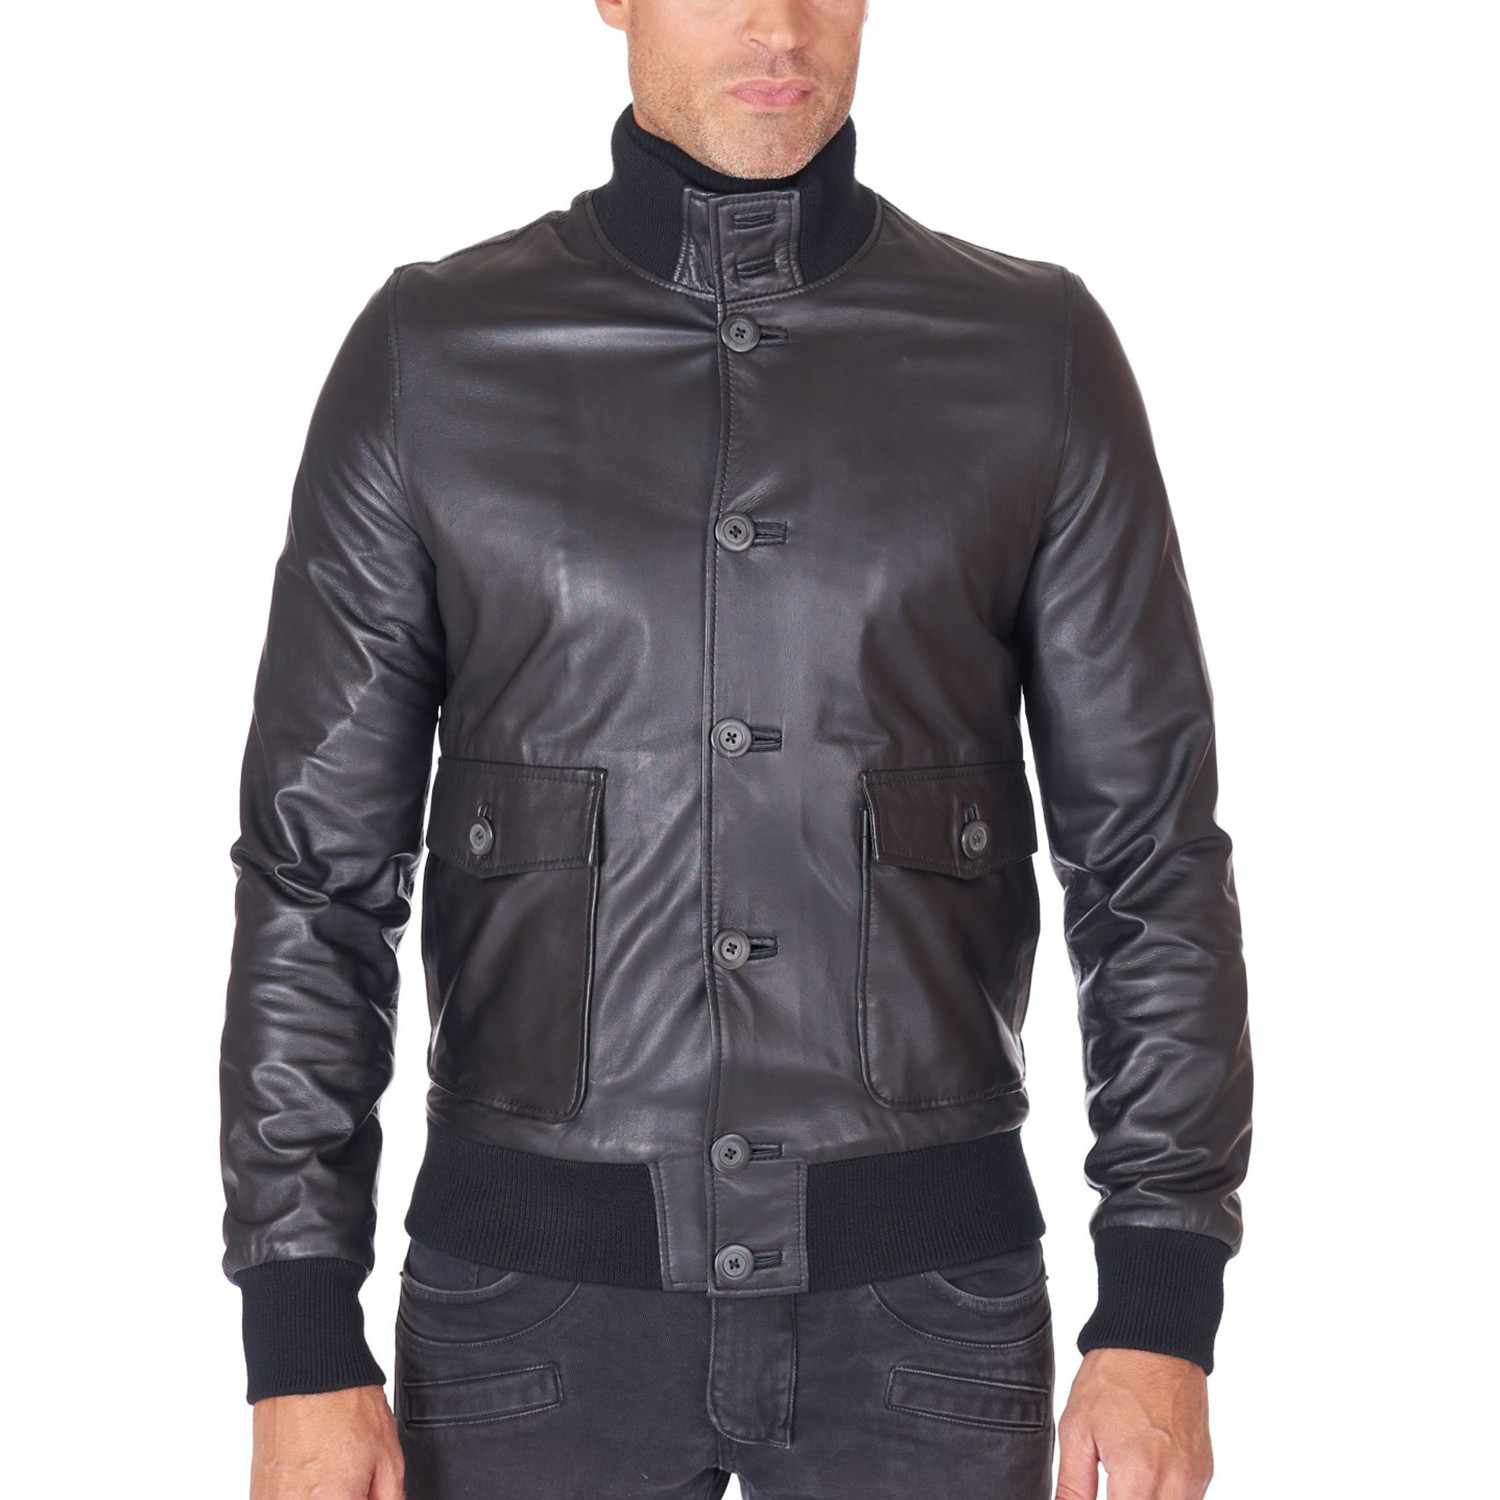 Alex Bottoni Bomber Jacket Leather Jacket // Black (Euro: 44) - AD ...